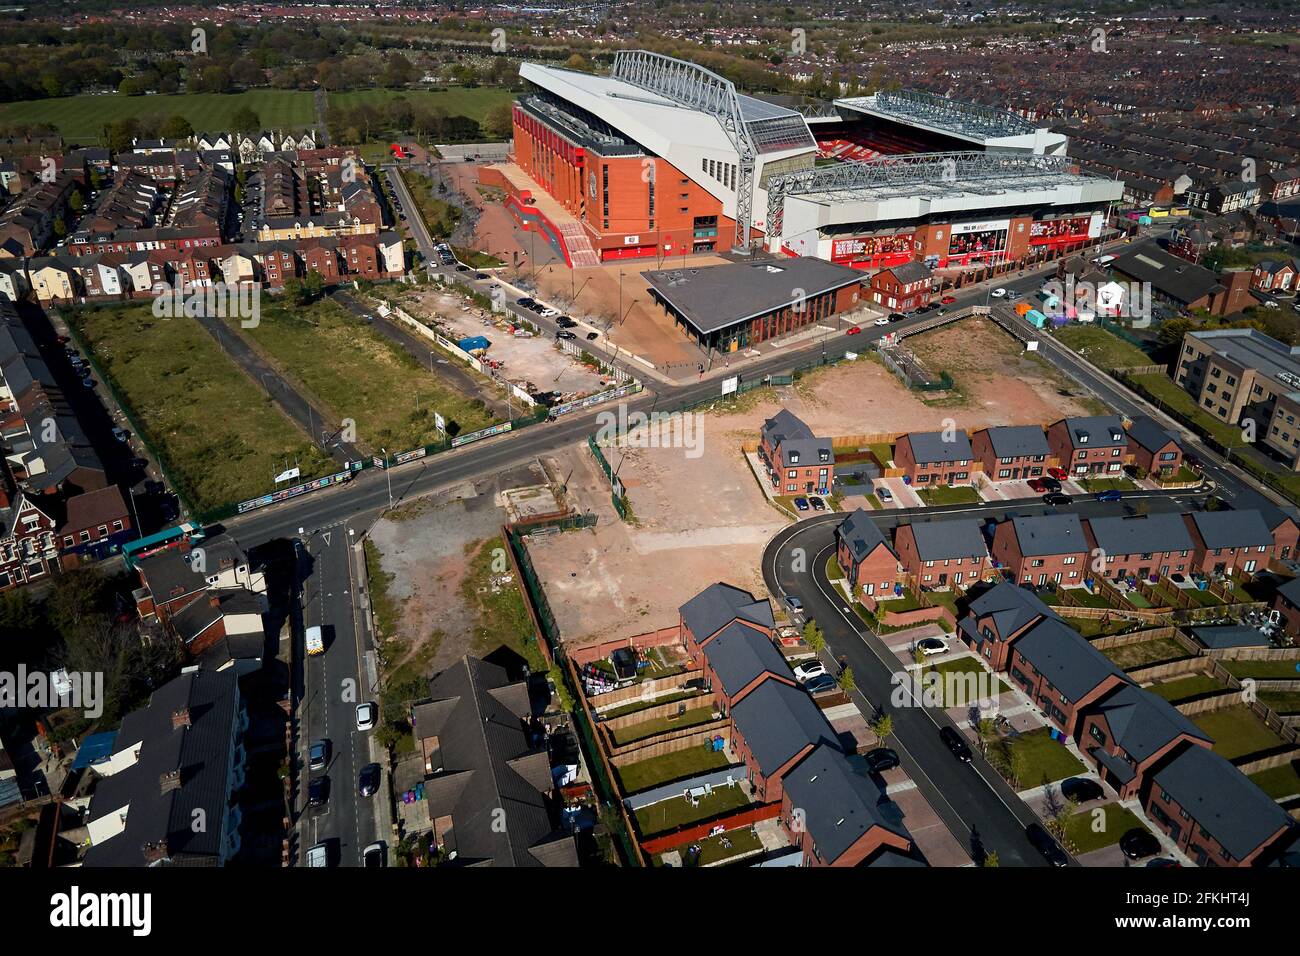 Vista aerea di Anfield che mostra lo stadio in un ambiente urbano circondato da case residenziali Foto Stock